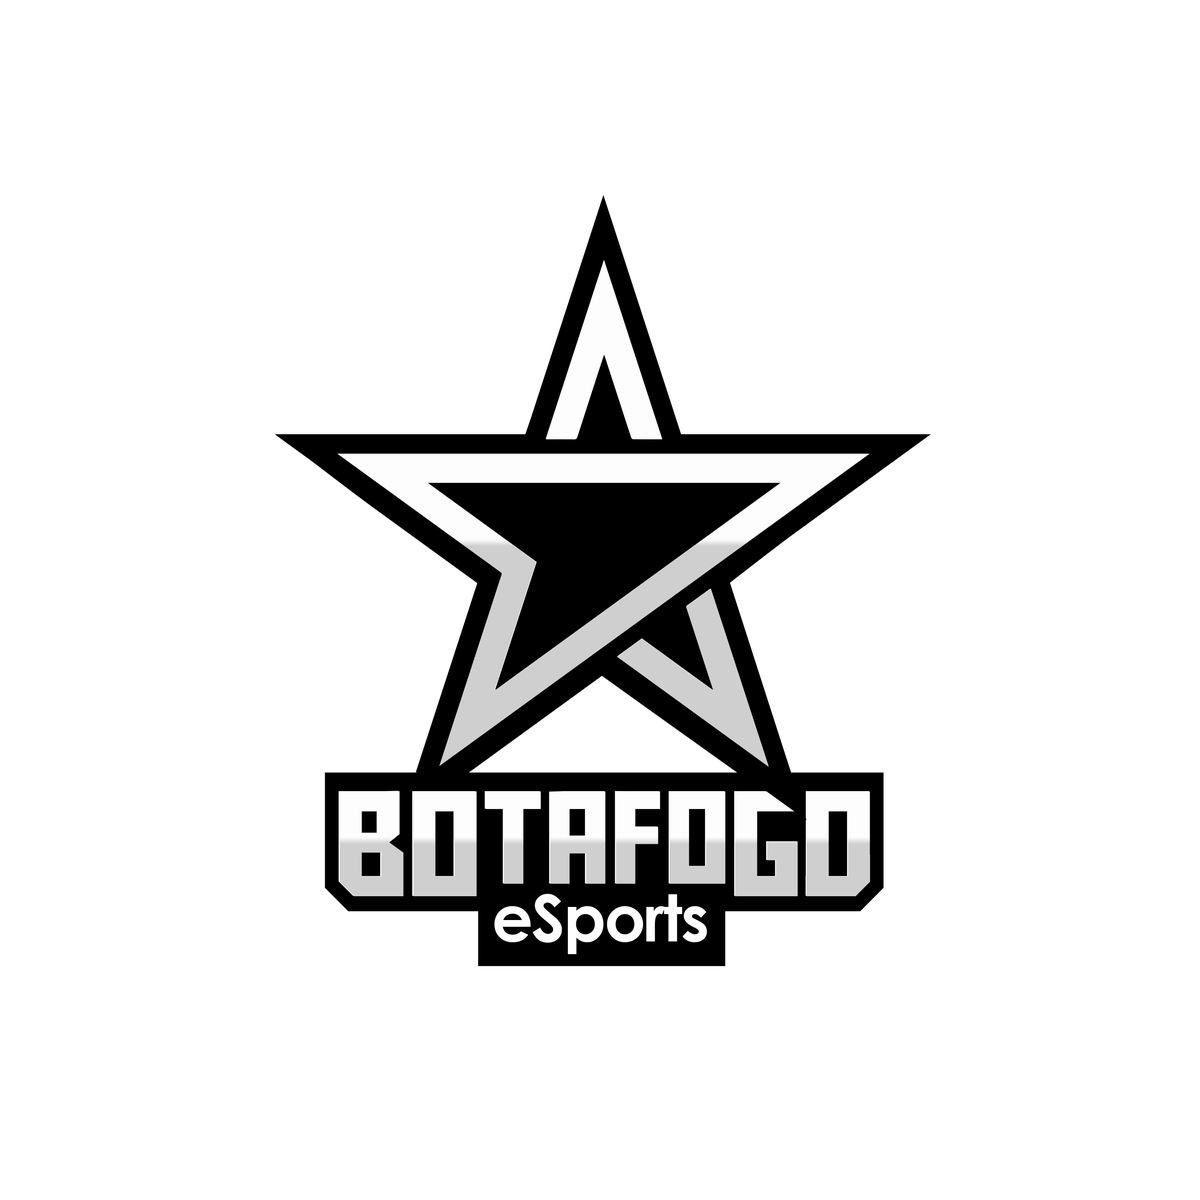 Imagens de logo botafogo png